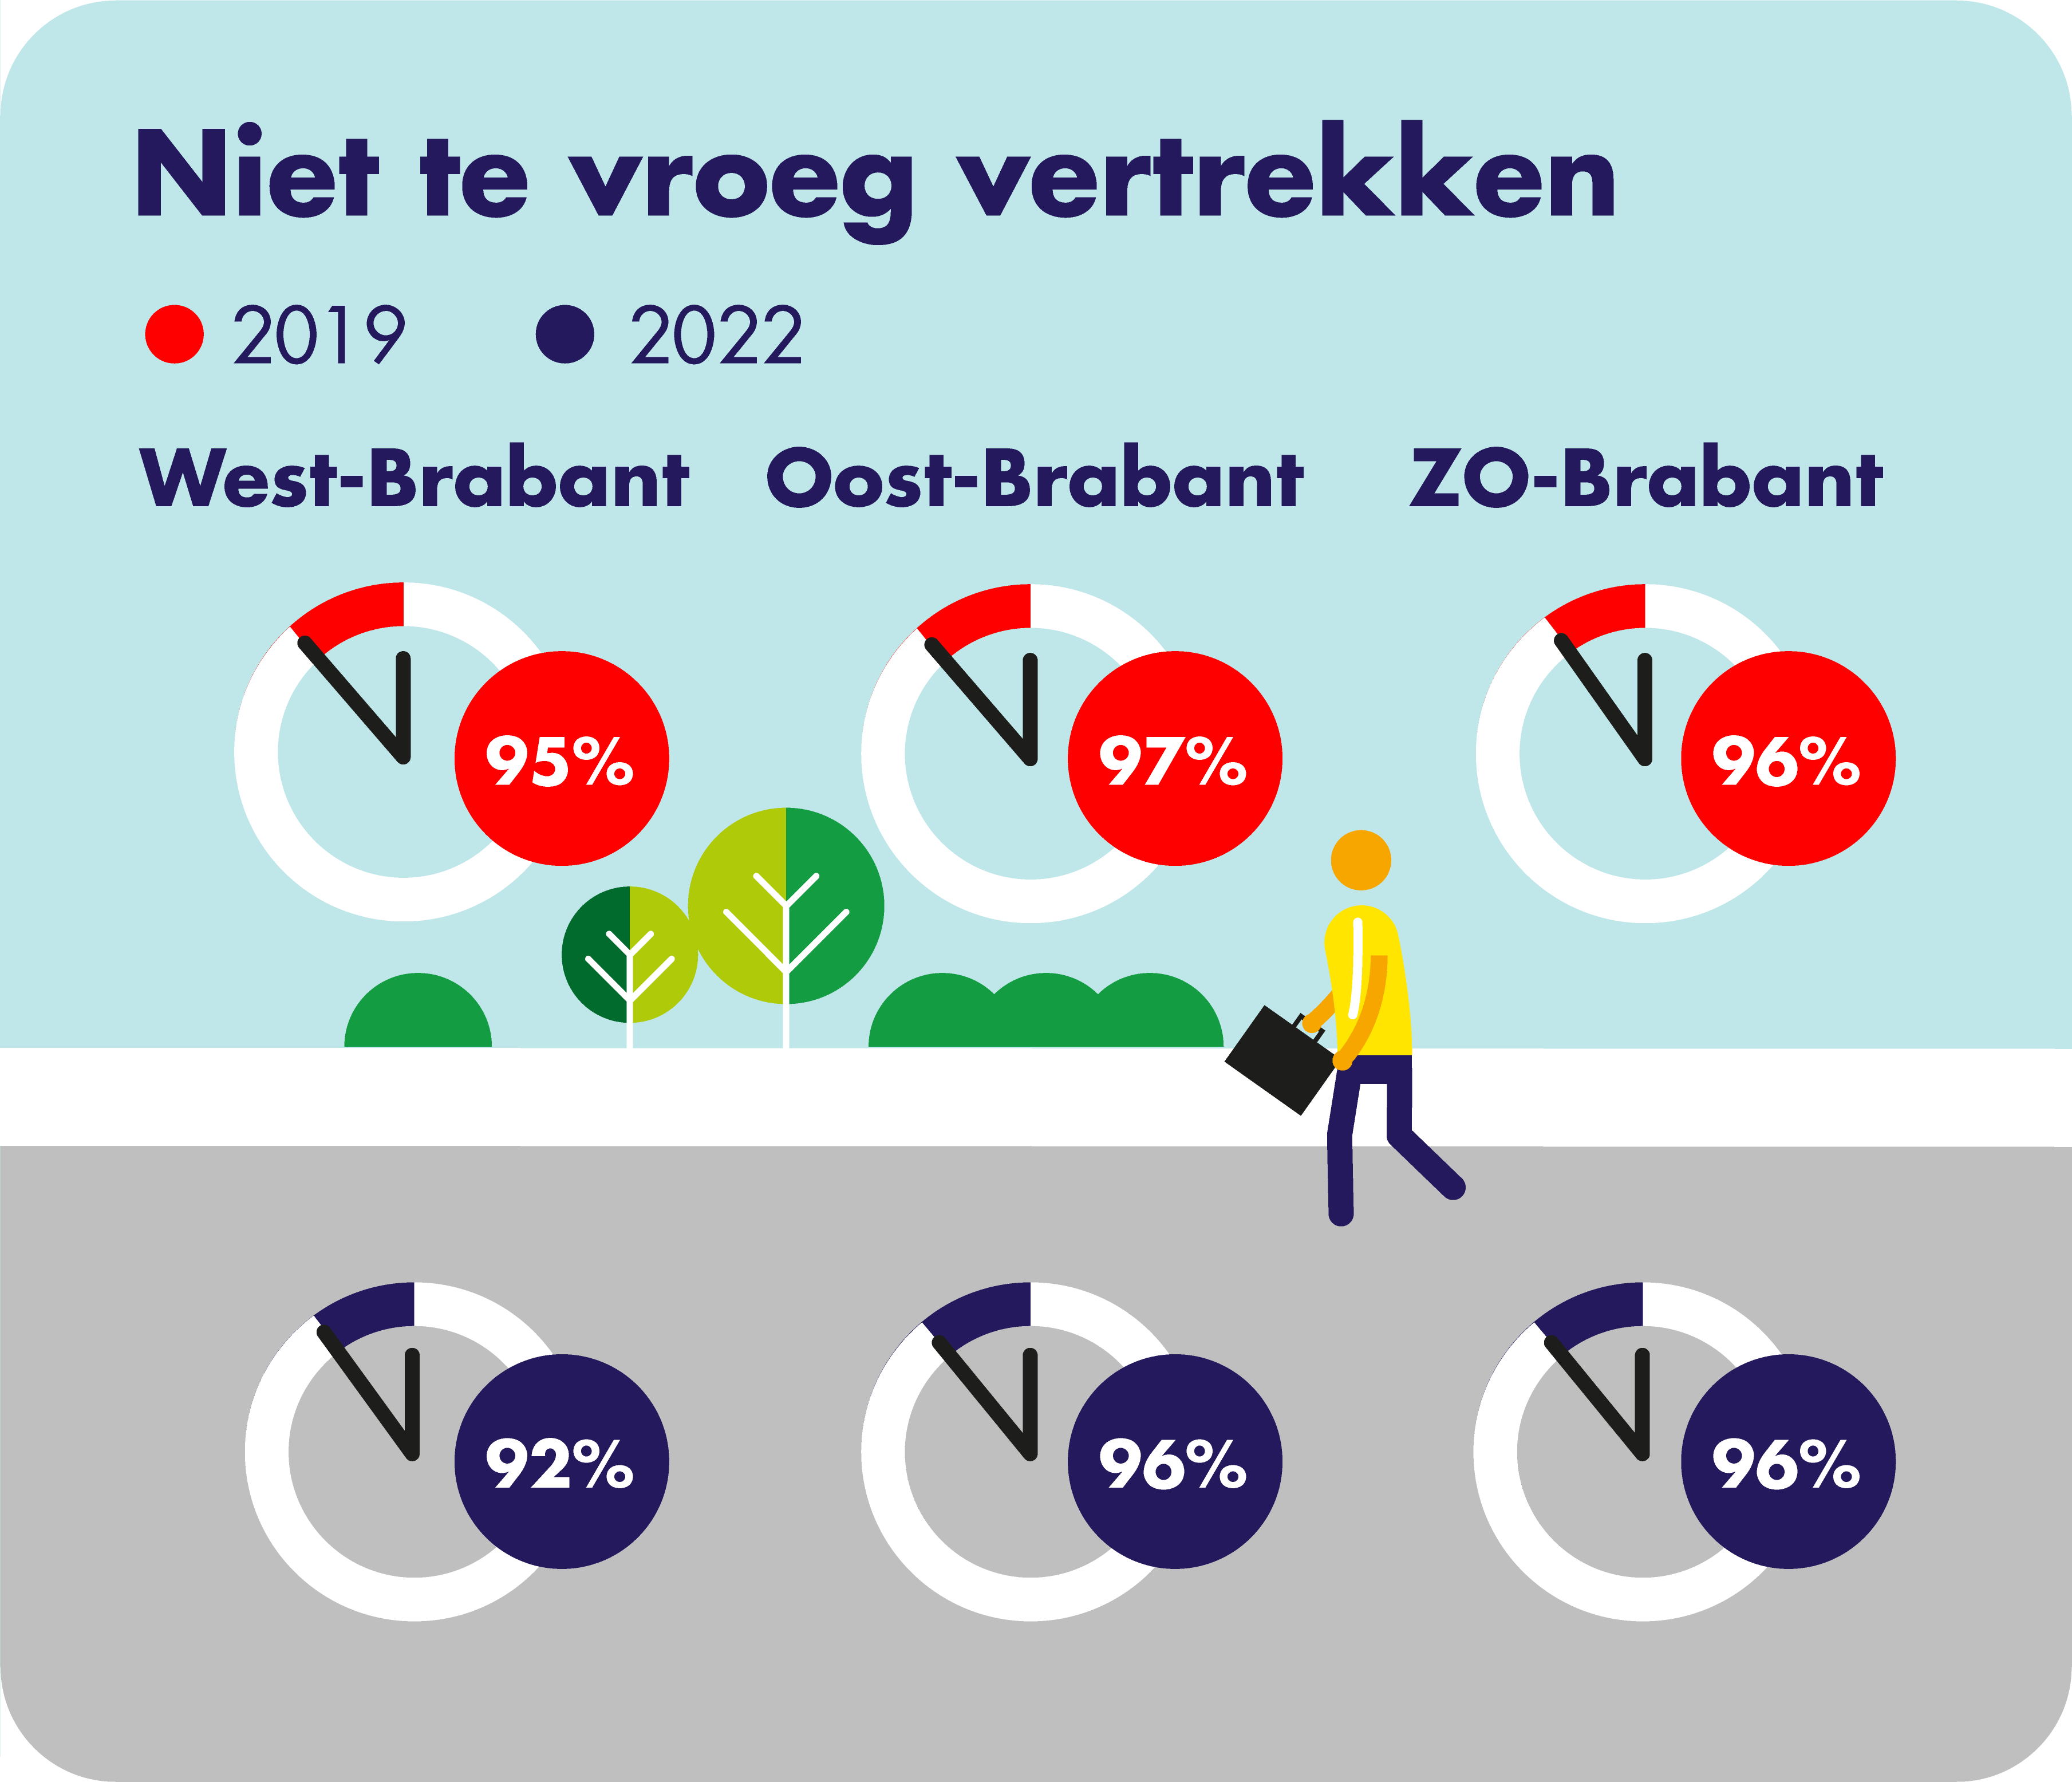 Op deze afbeelding wordt per concessiegebied het aandeel van de niet te vroeg vertokken ritten op haltes weergegeven voor de jaren 2019 en 2022. Voor West-Brabant is in 2019 95% van de ritten niet te vroeg vertrokken en in 2022 92%. In Oost-Brabant is in 2019 97% van de ritten niet te vroeg vertokken en in 2022 96%. In Zuidoost-Brabant is in zowel 2019 als in 2022 96% van de ritten niet te vroeg vertokken. 